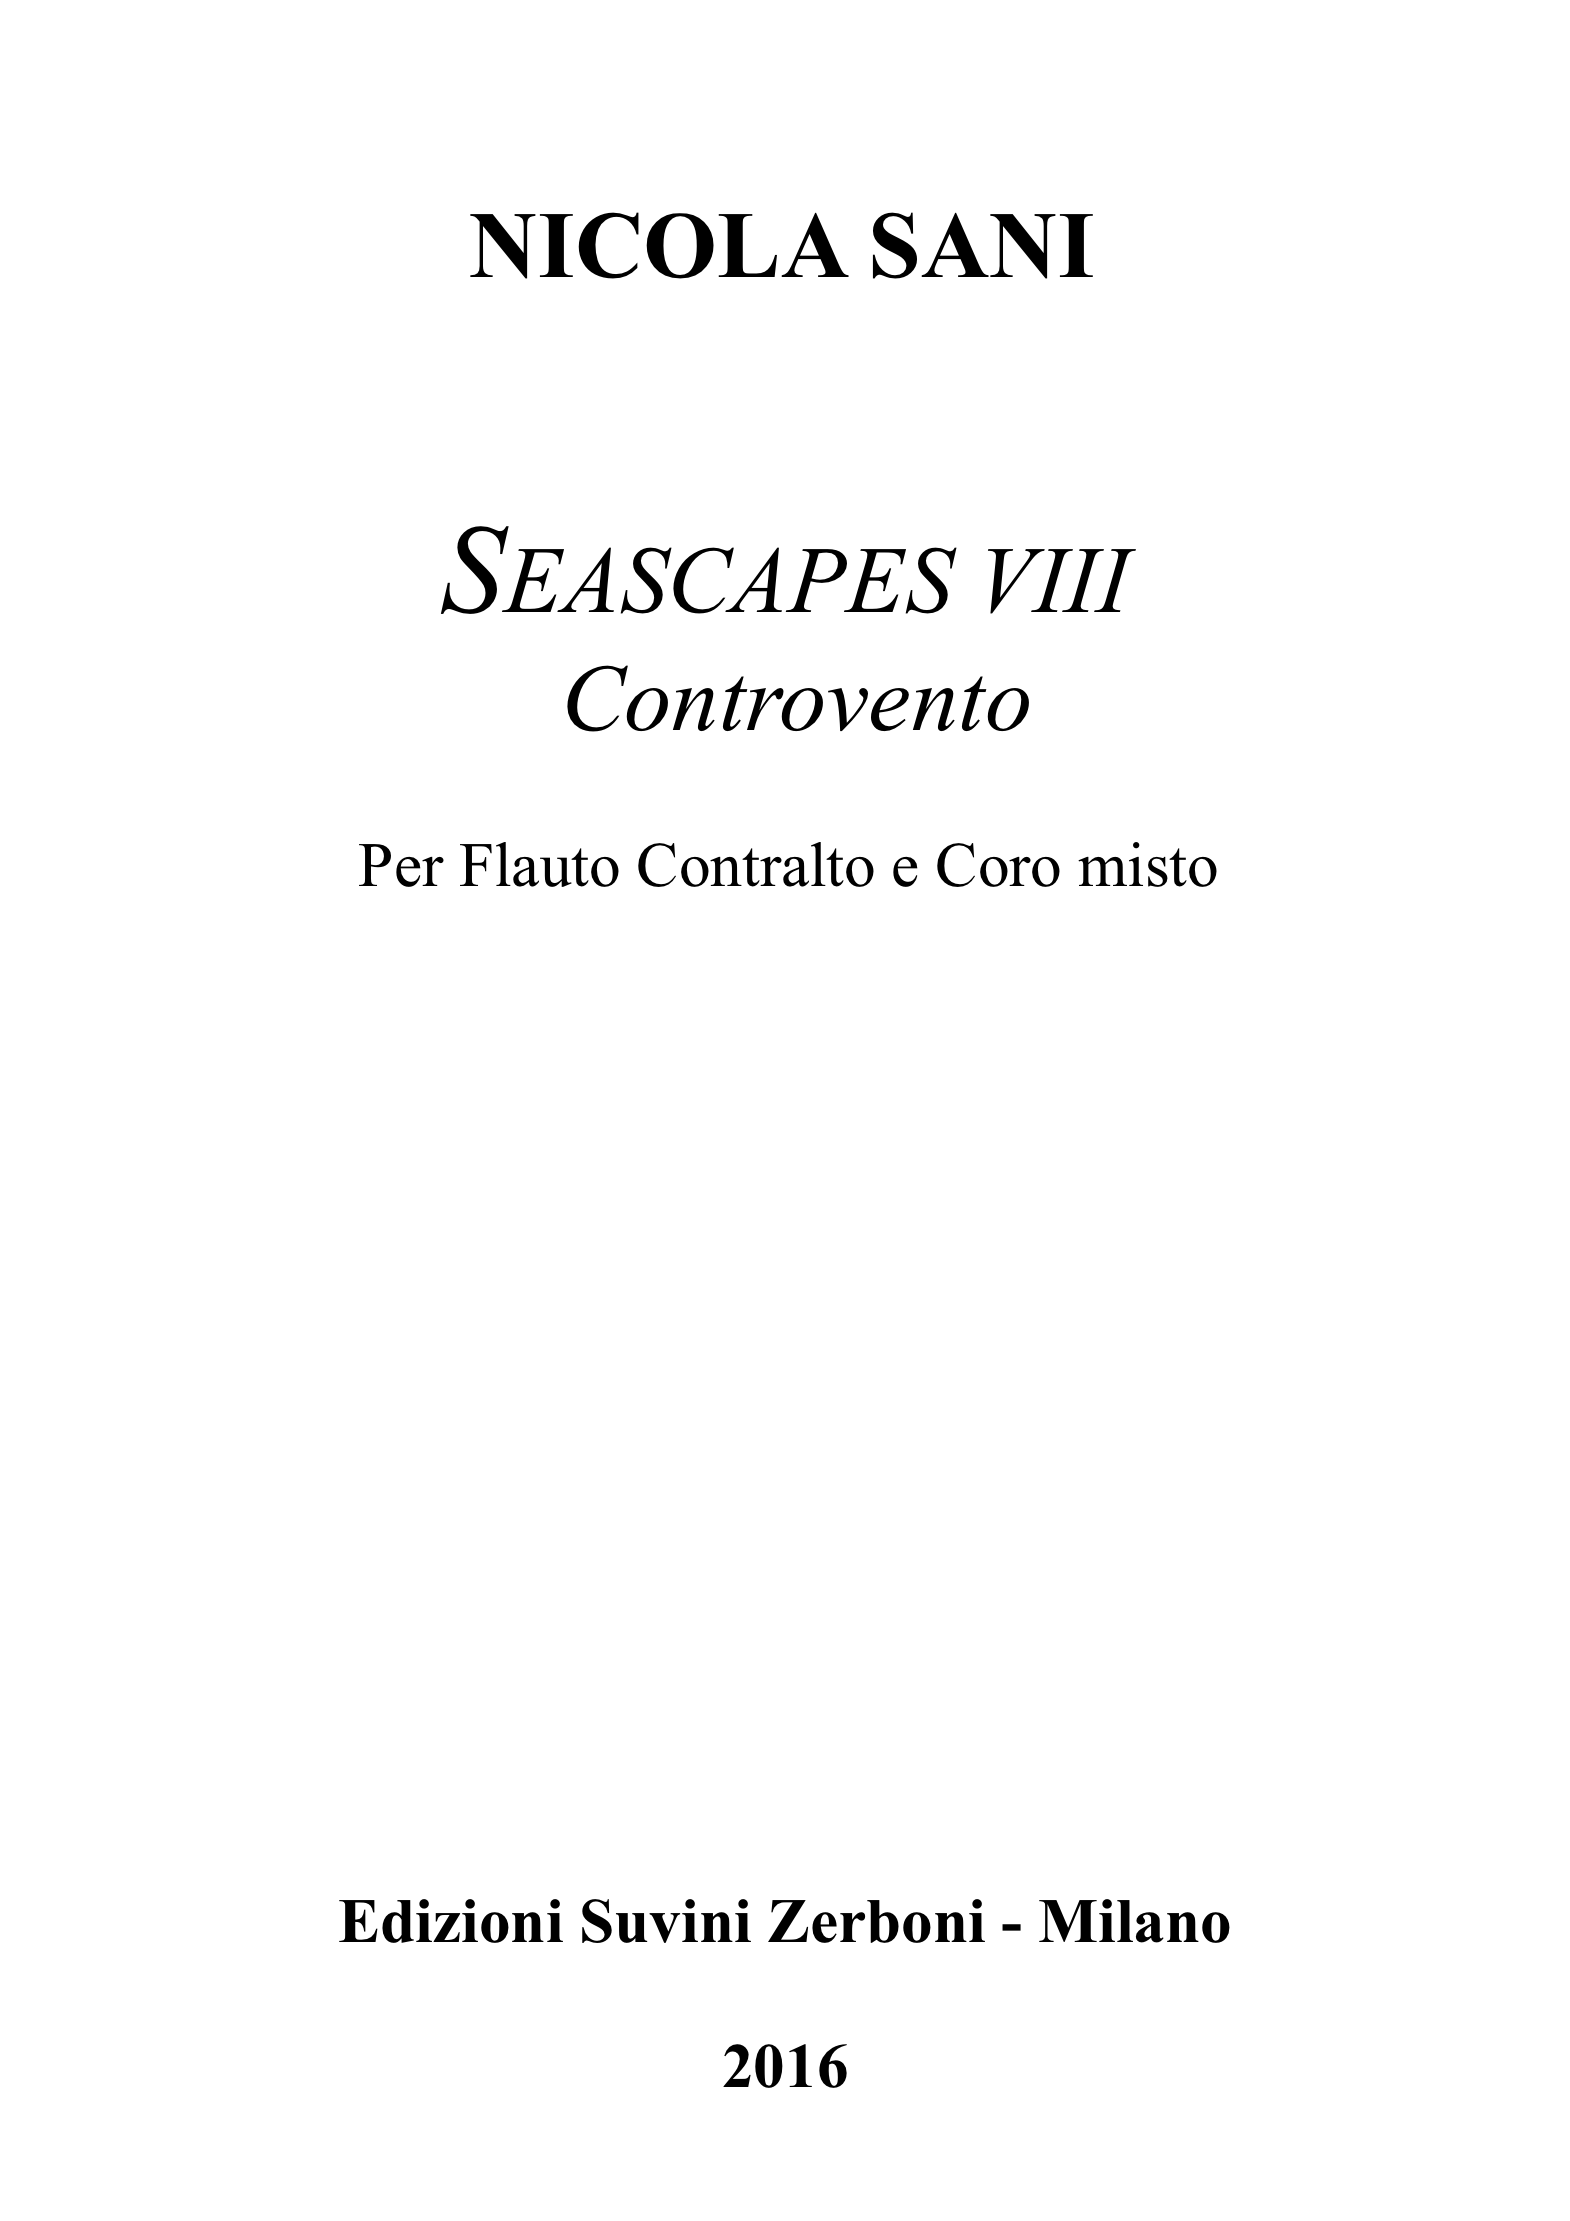 Seascapese VIII_Controvento_Sani 1